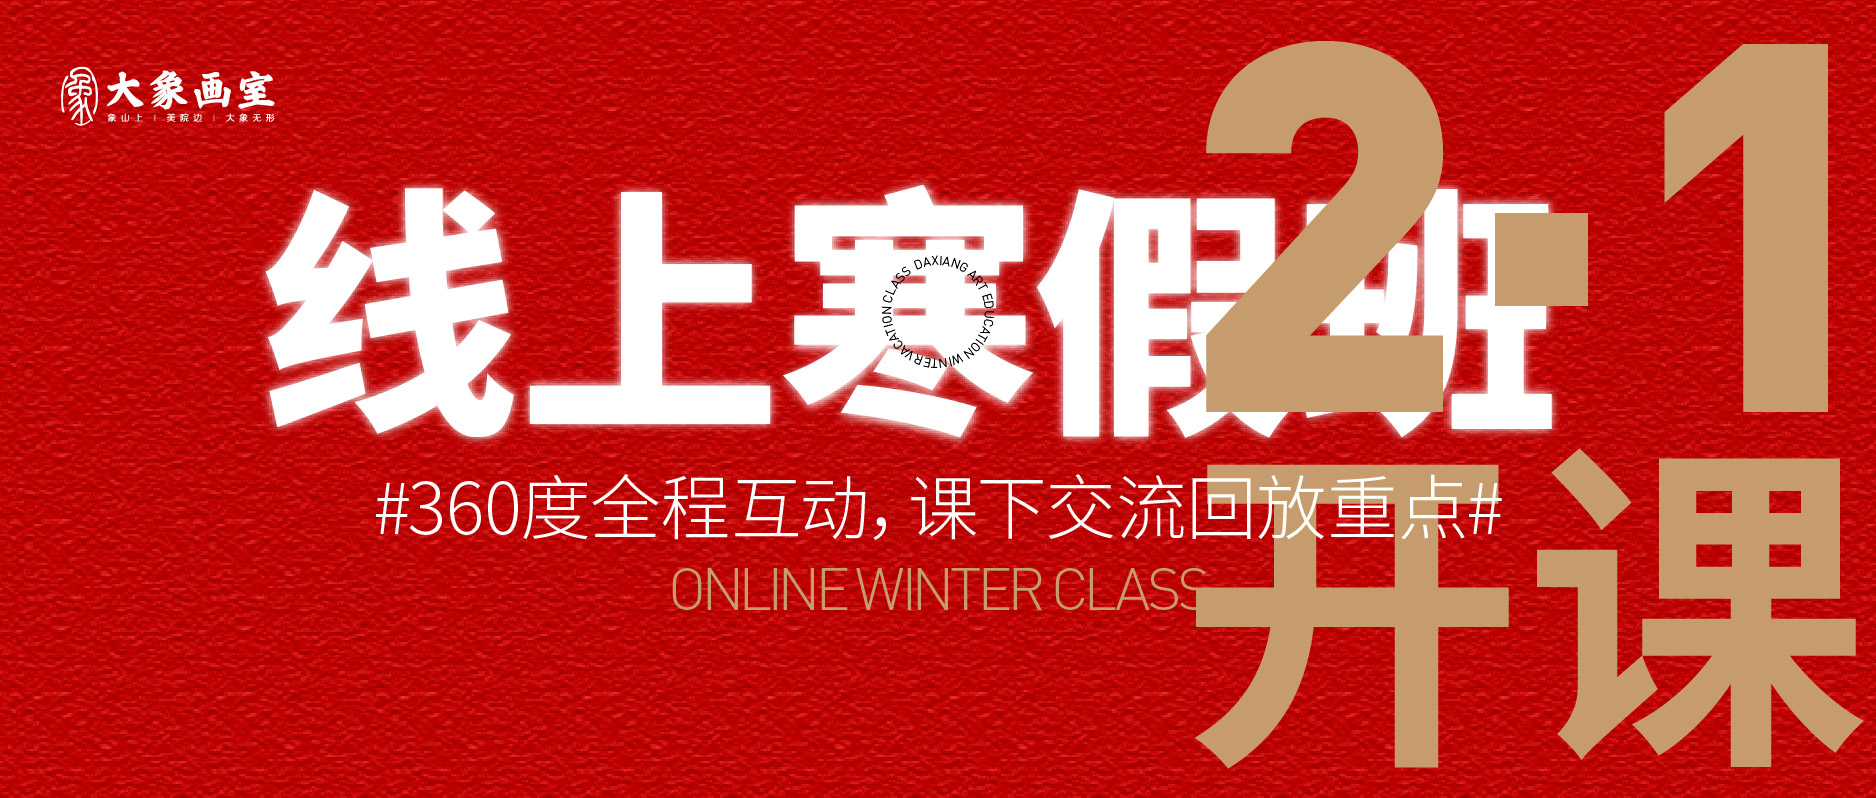 线上美术寒假班|高效的线上交互式寒假班，2月1日开课！